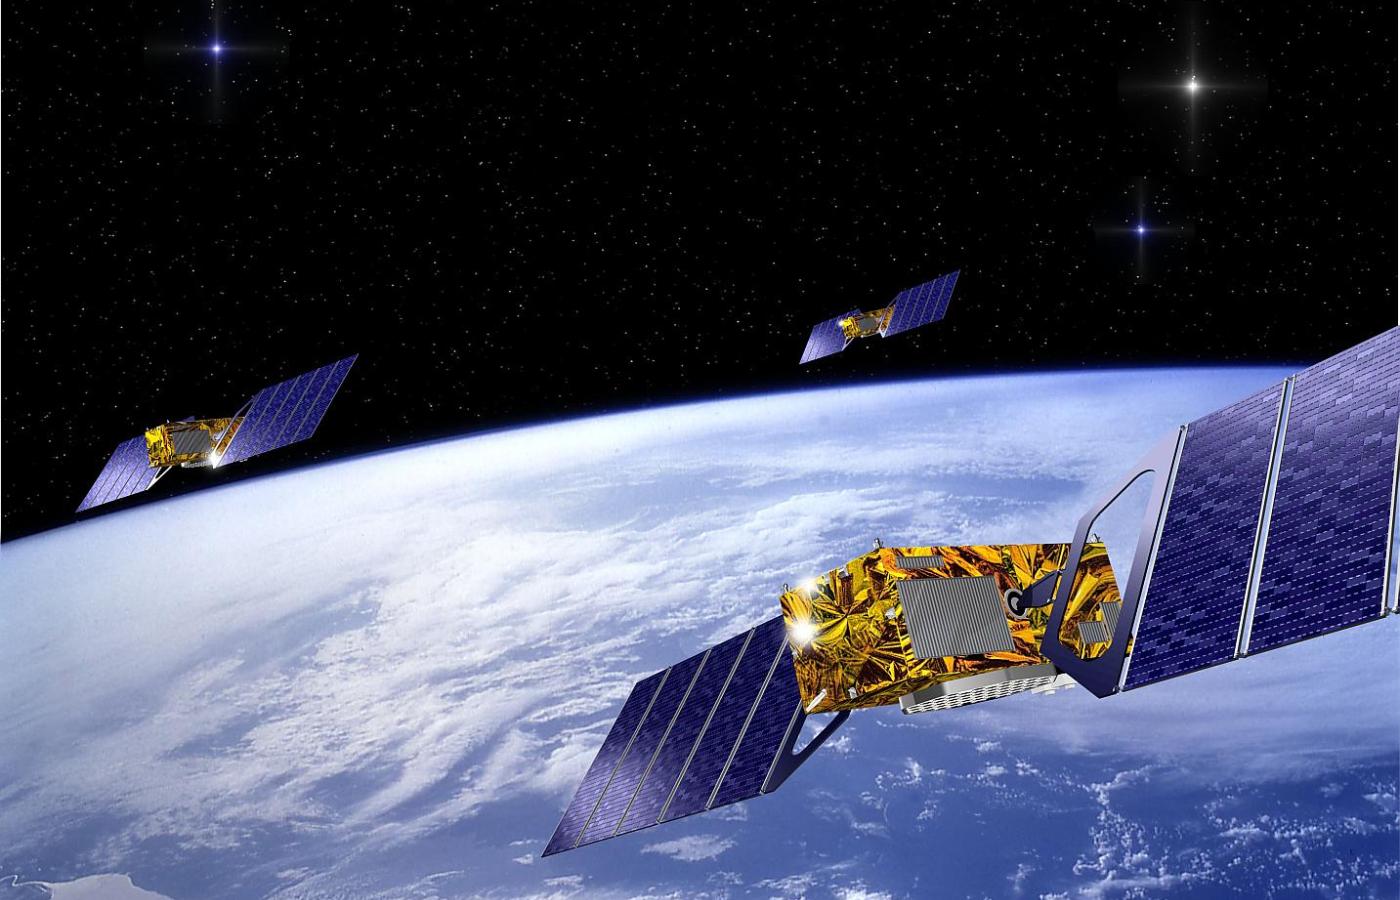 30 satelitów Galileo uniezależni Europę od Ameryki i da jej perfekcyjny system nawigacji satelitarnej.